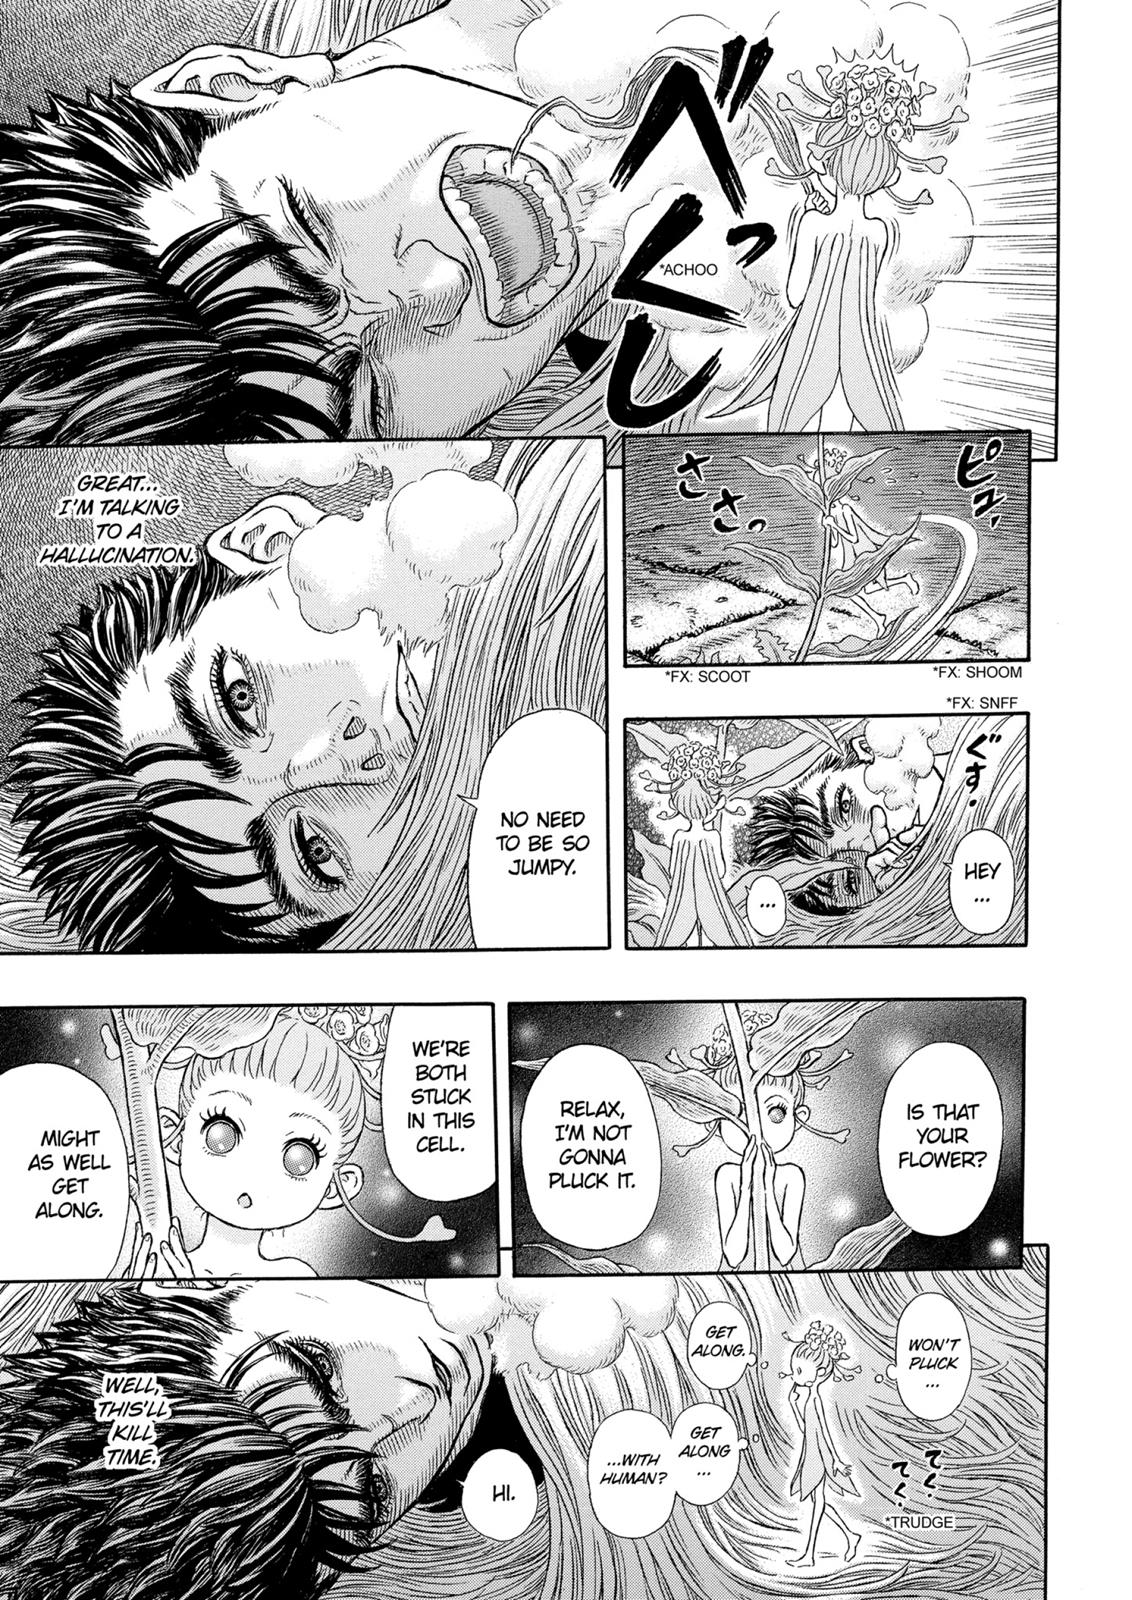 Berserk Manga Chapter 330 image 08